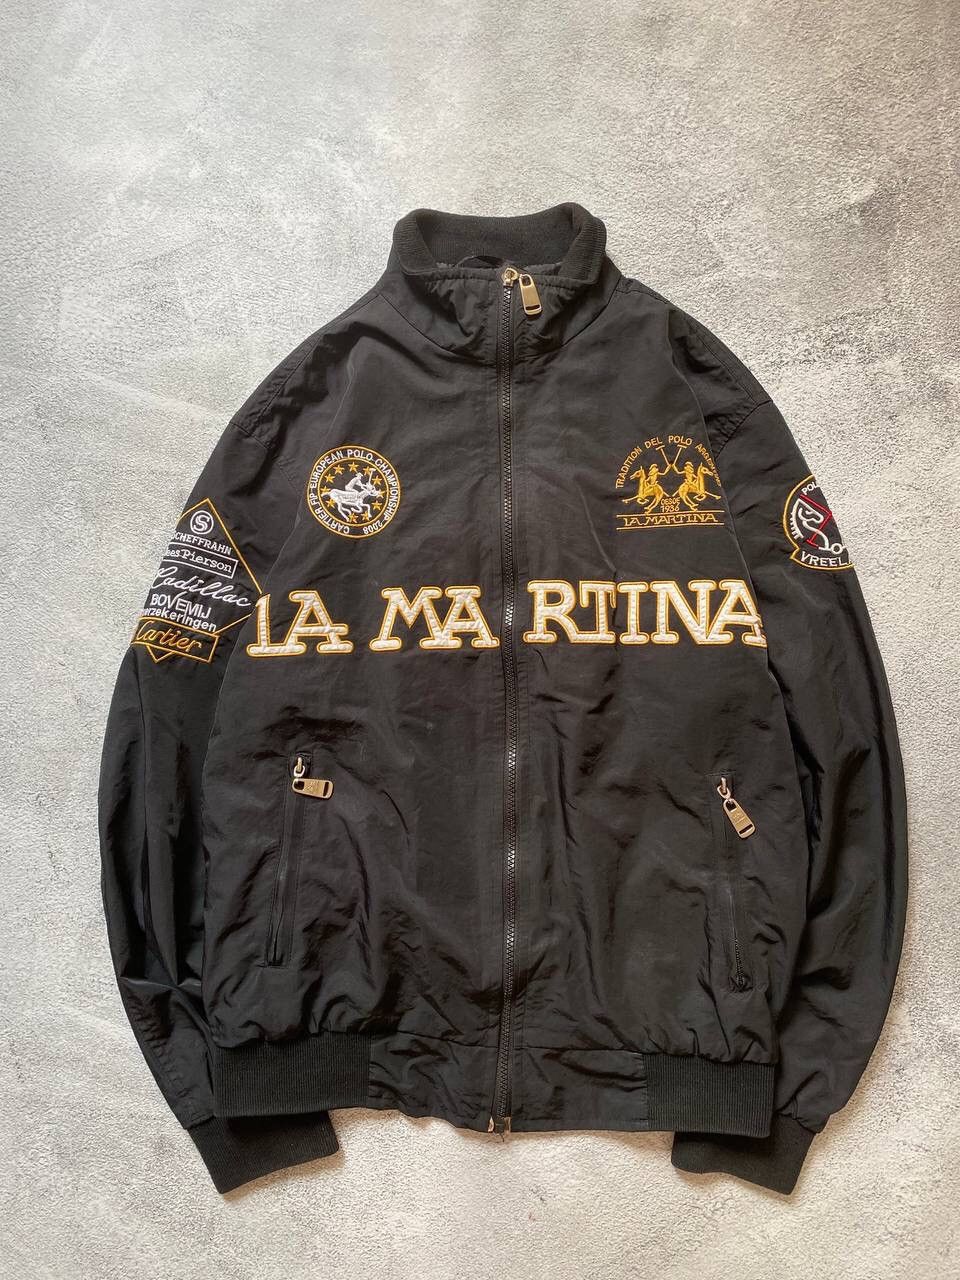 Vintage La Martina Cartier racing jacket | Grailed